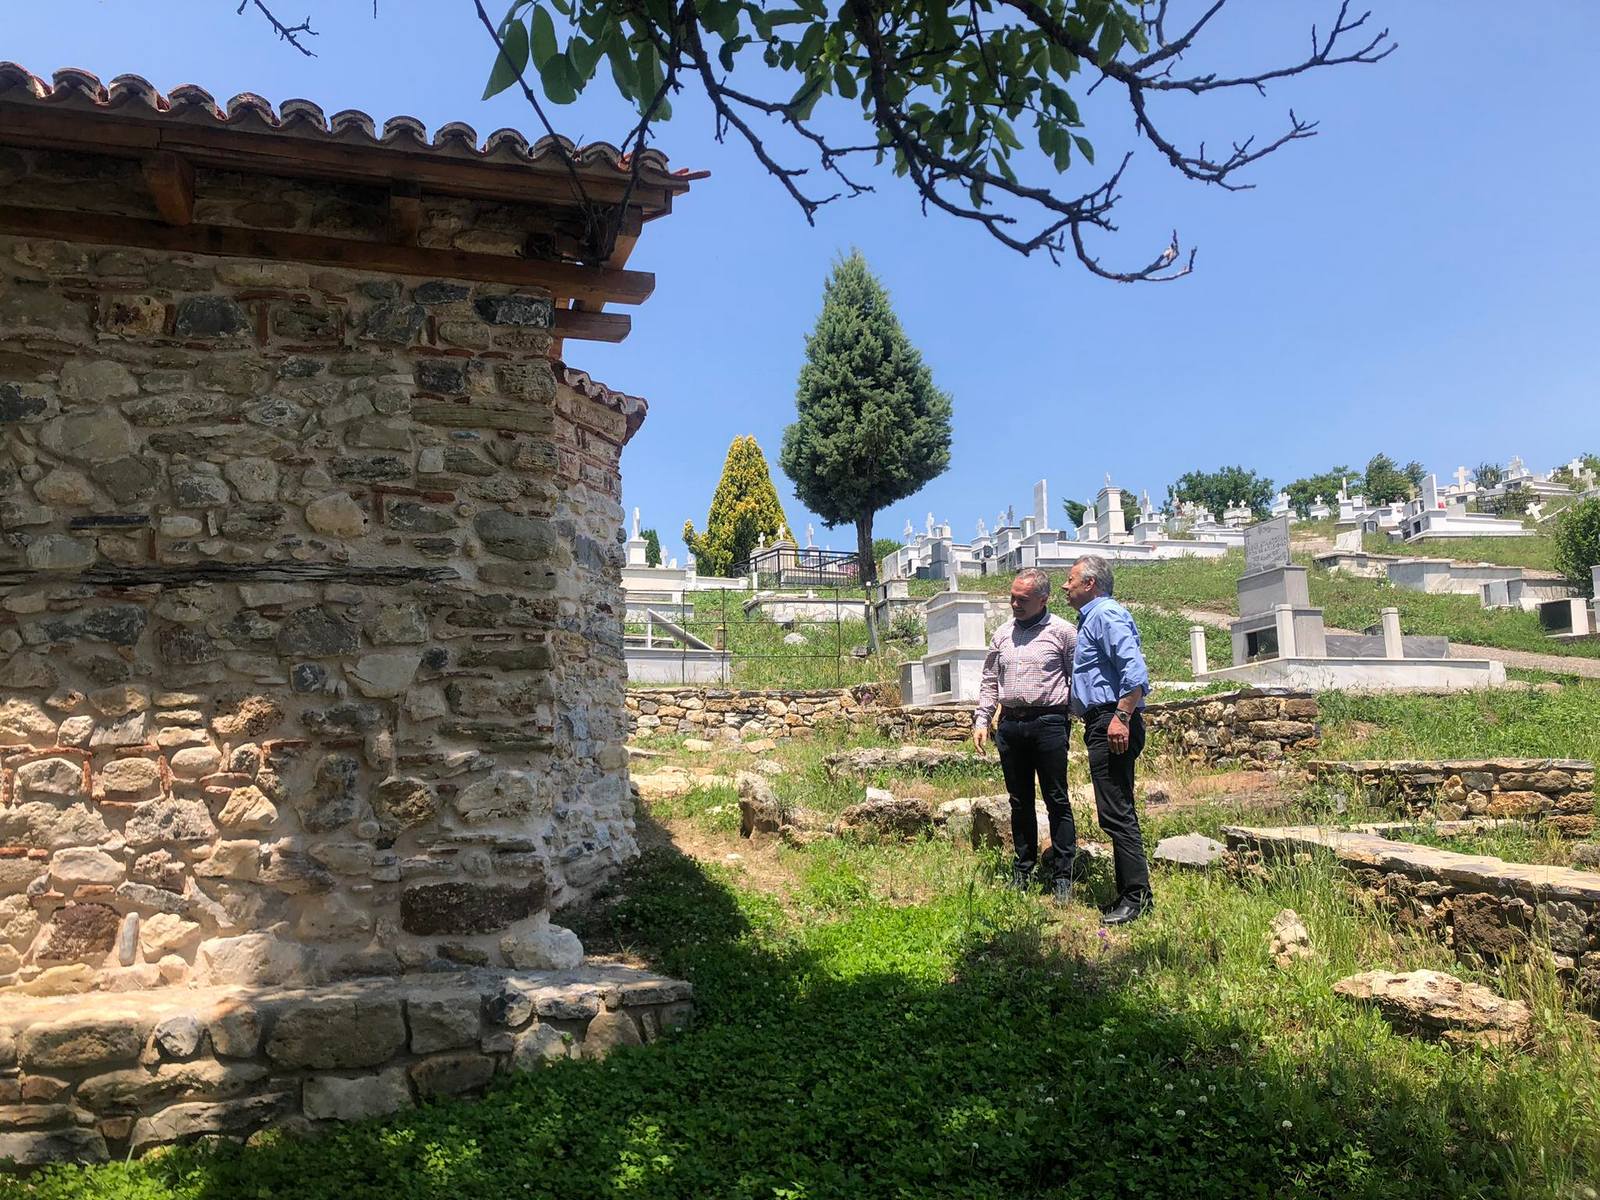 Έργα ανάδειξης της πολιτιστικής κληρονομιάς που υλοποιούνται μέσω του Επιχειρησιακού Προγράμματος 2014-2020 της Περιφέρειας Δυτικής Μακεδονίας